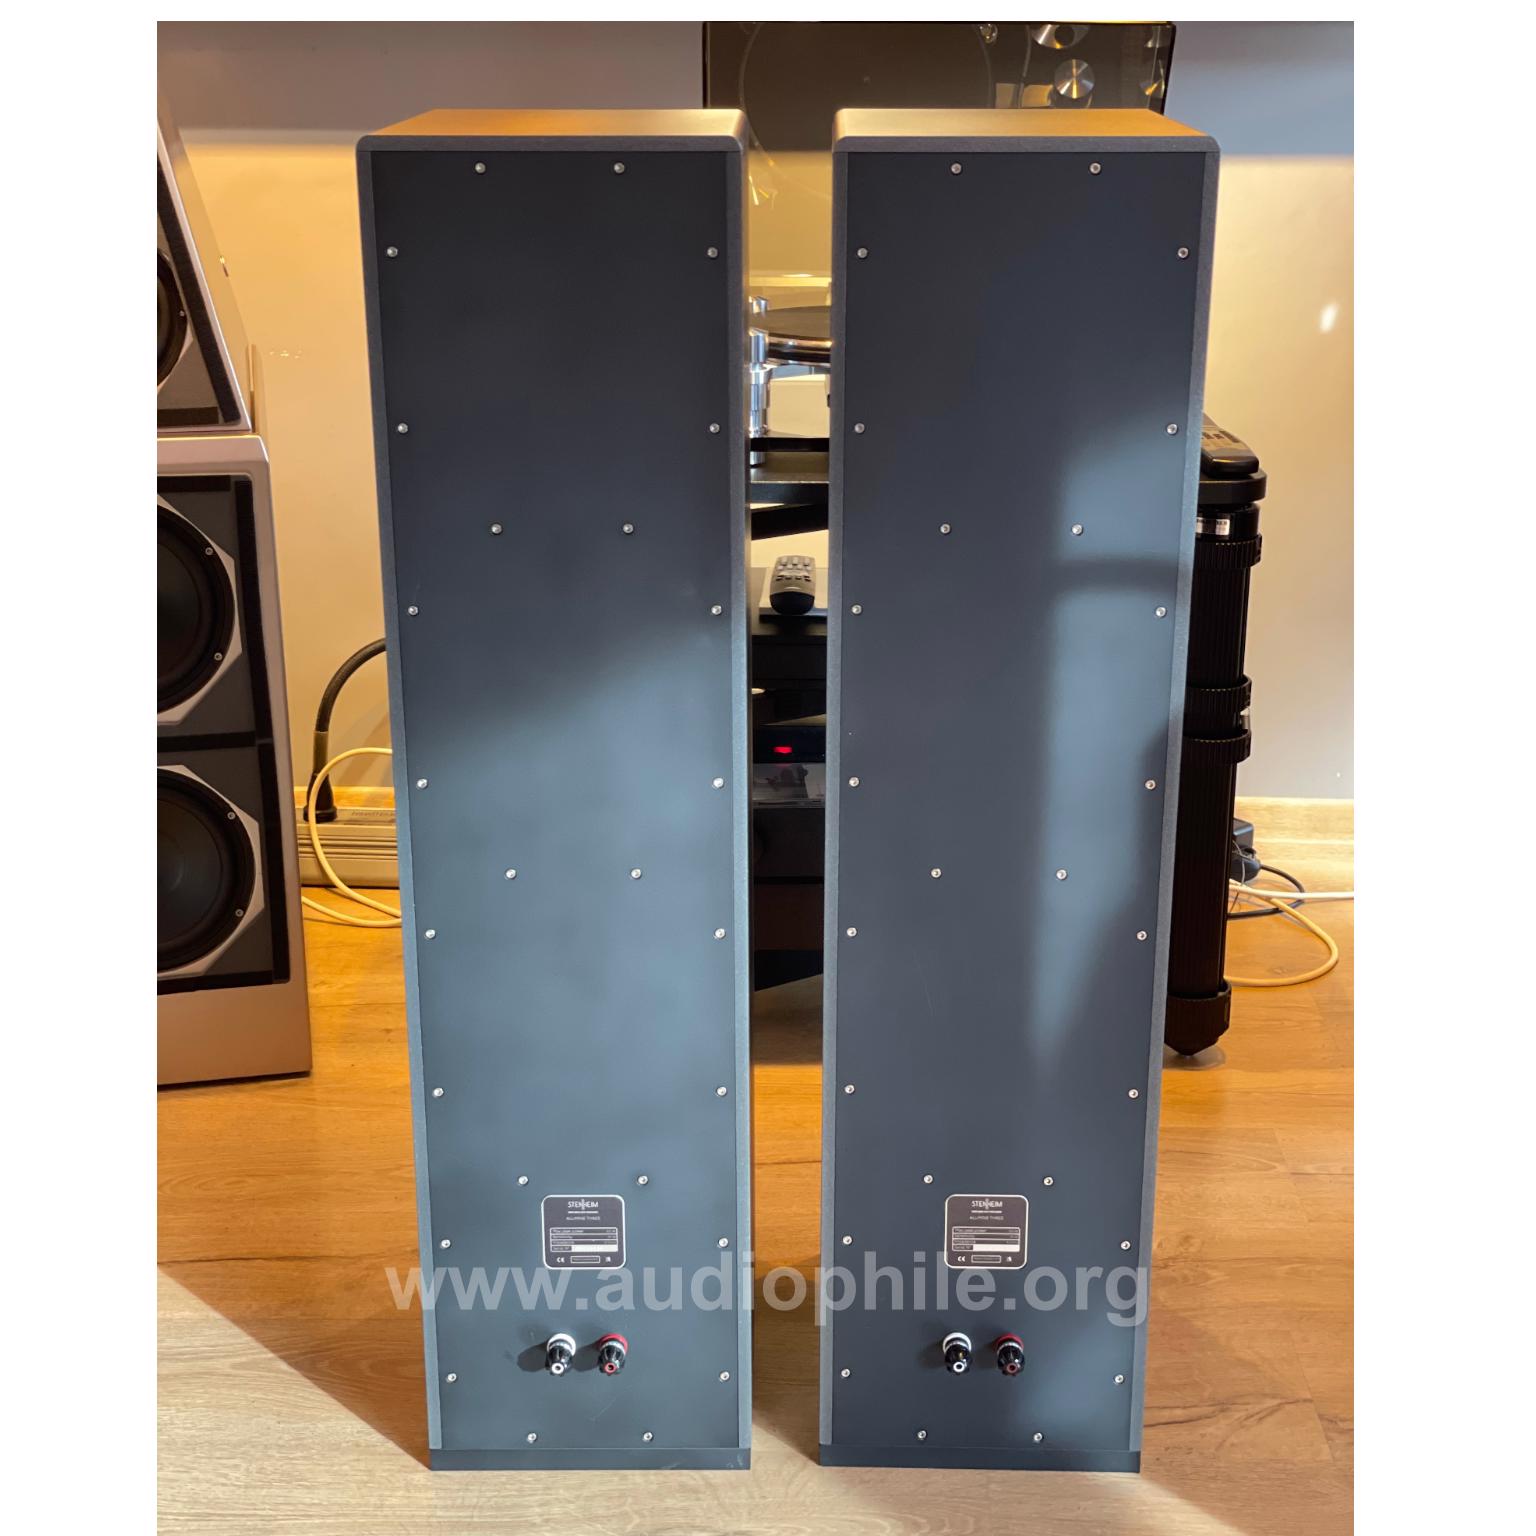 Stenheim alumine 3 speakers